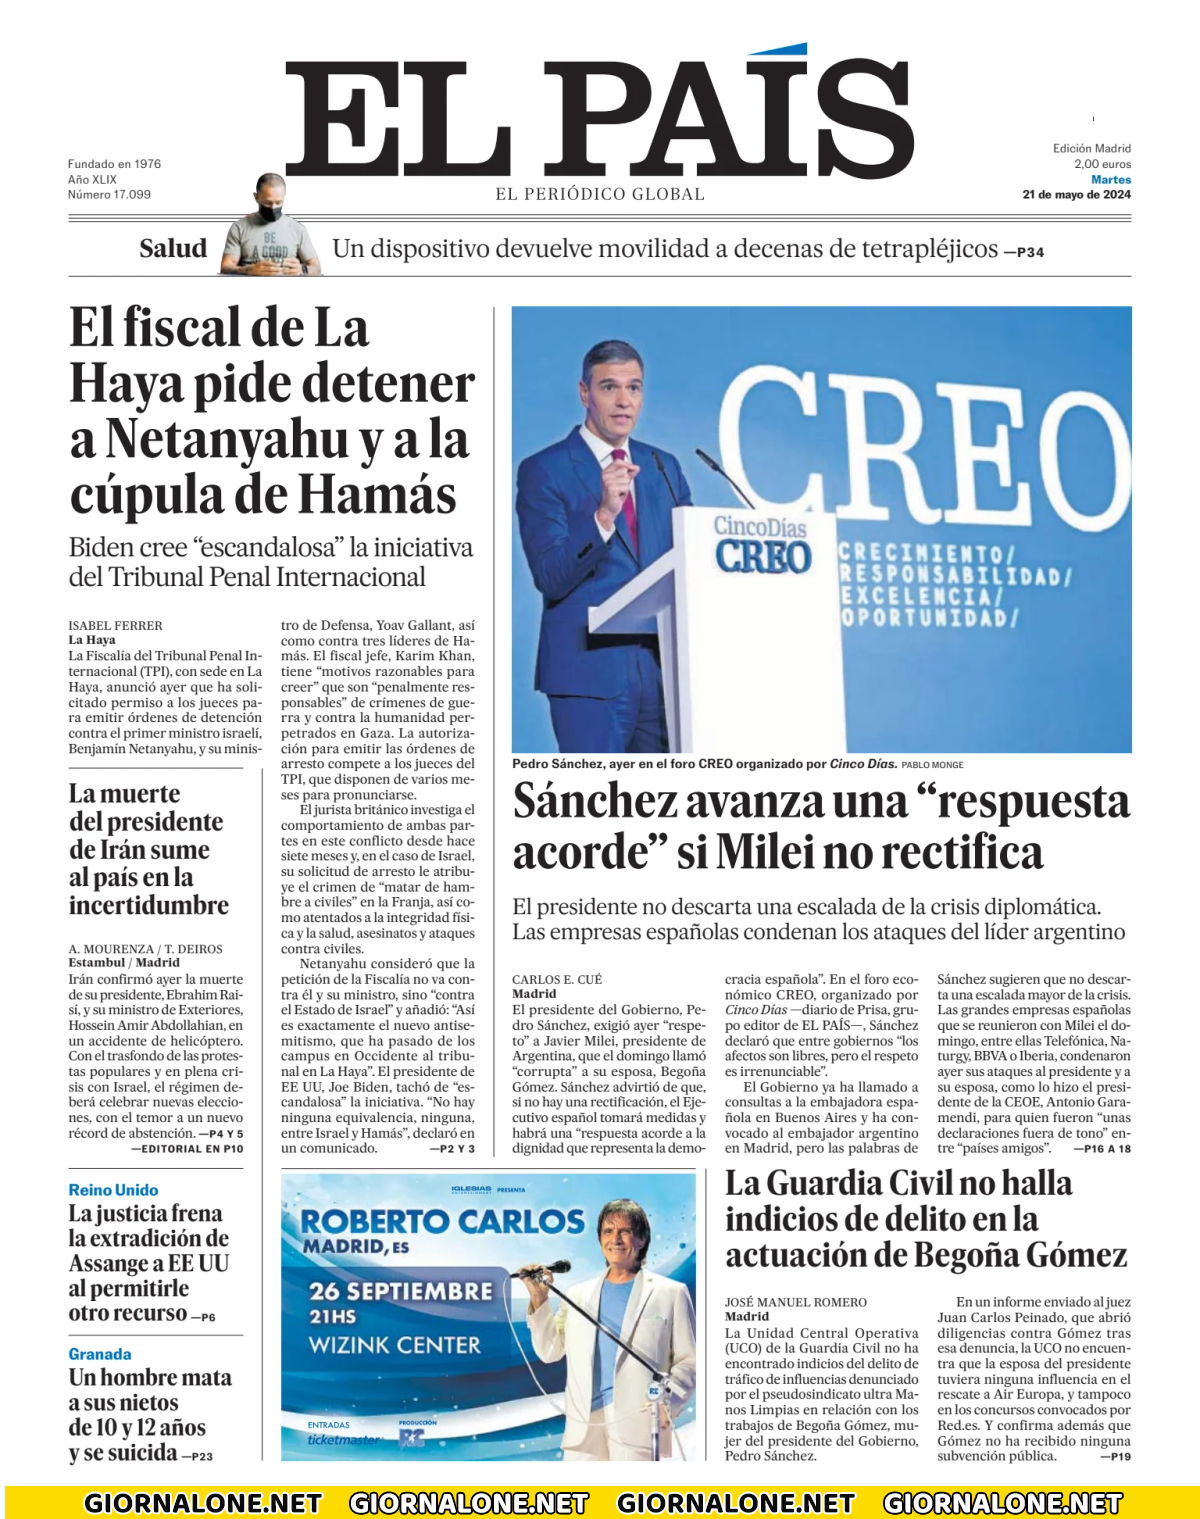 Prima pagina di El País